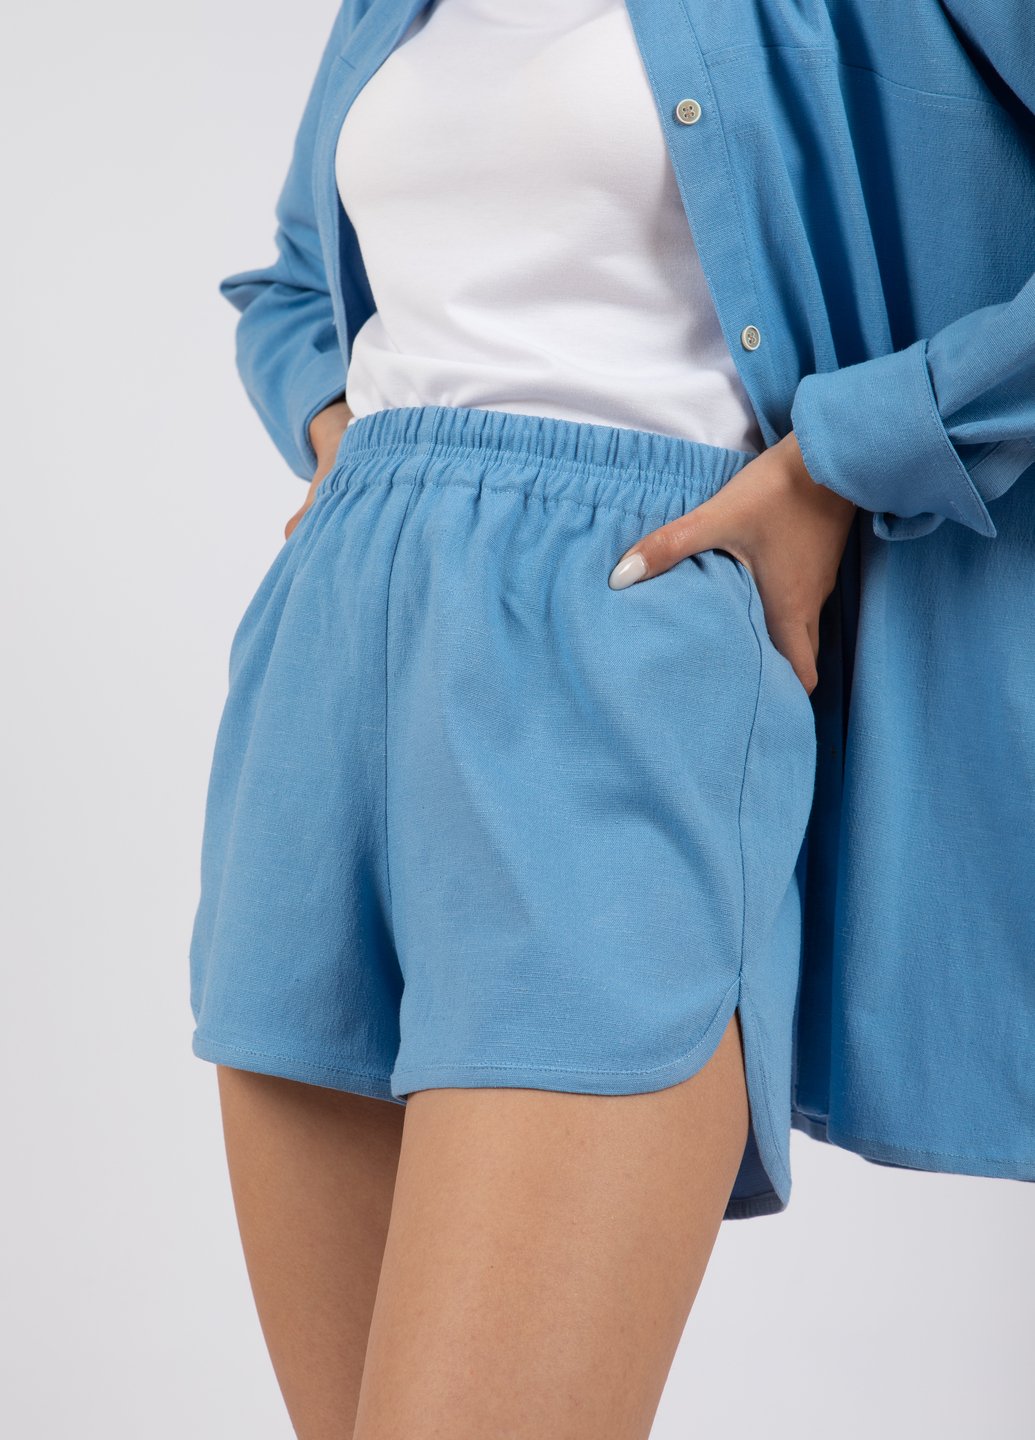 Купить Льняные шорты женские Merlini Марсель 300000024 - Голубой, 42-44 в интернет-магазине